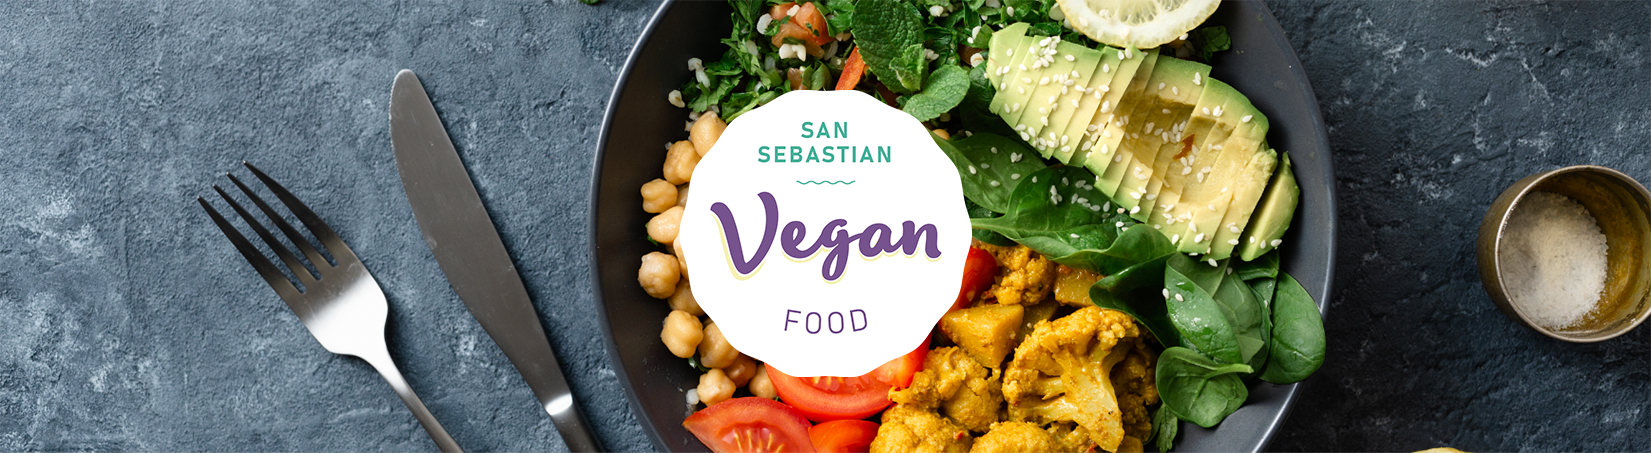 San Sebastian Vegan Food